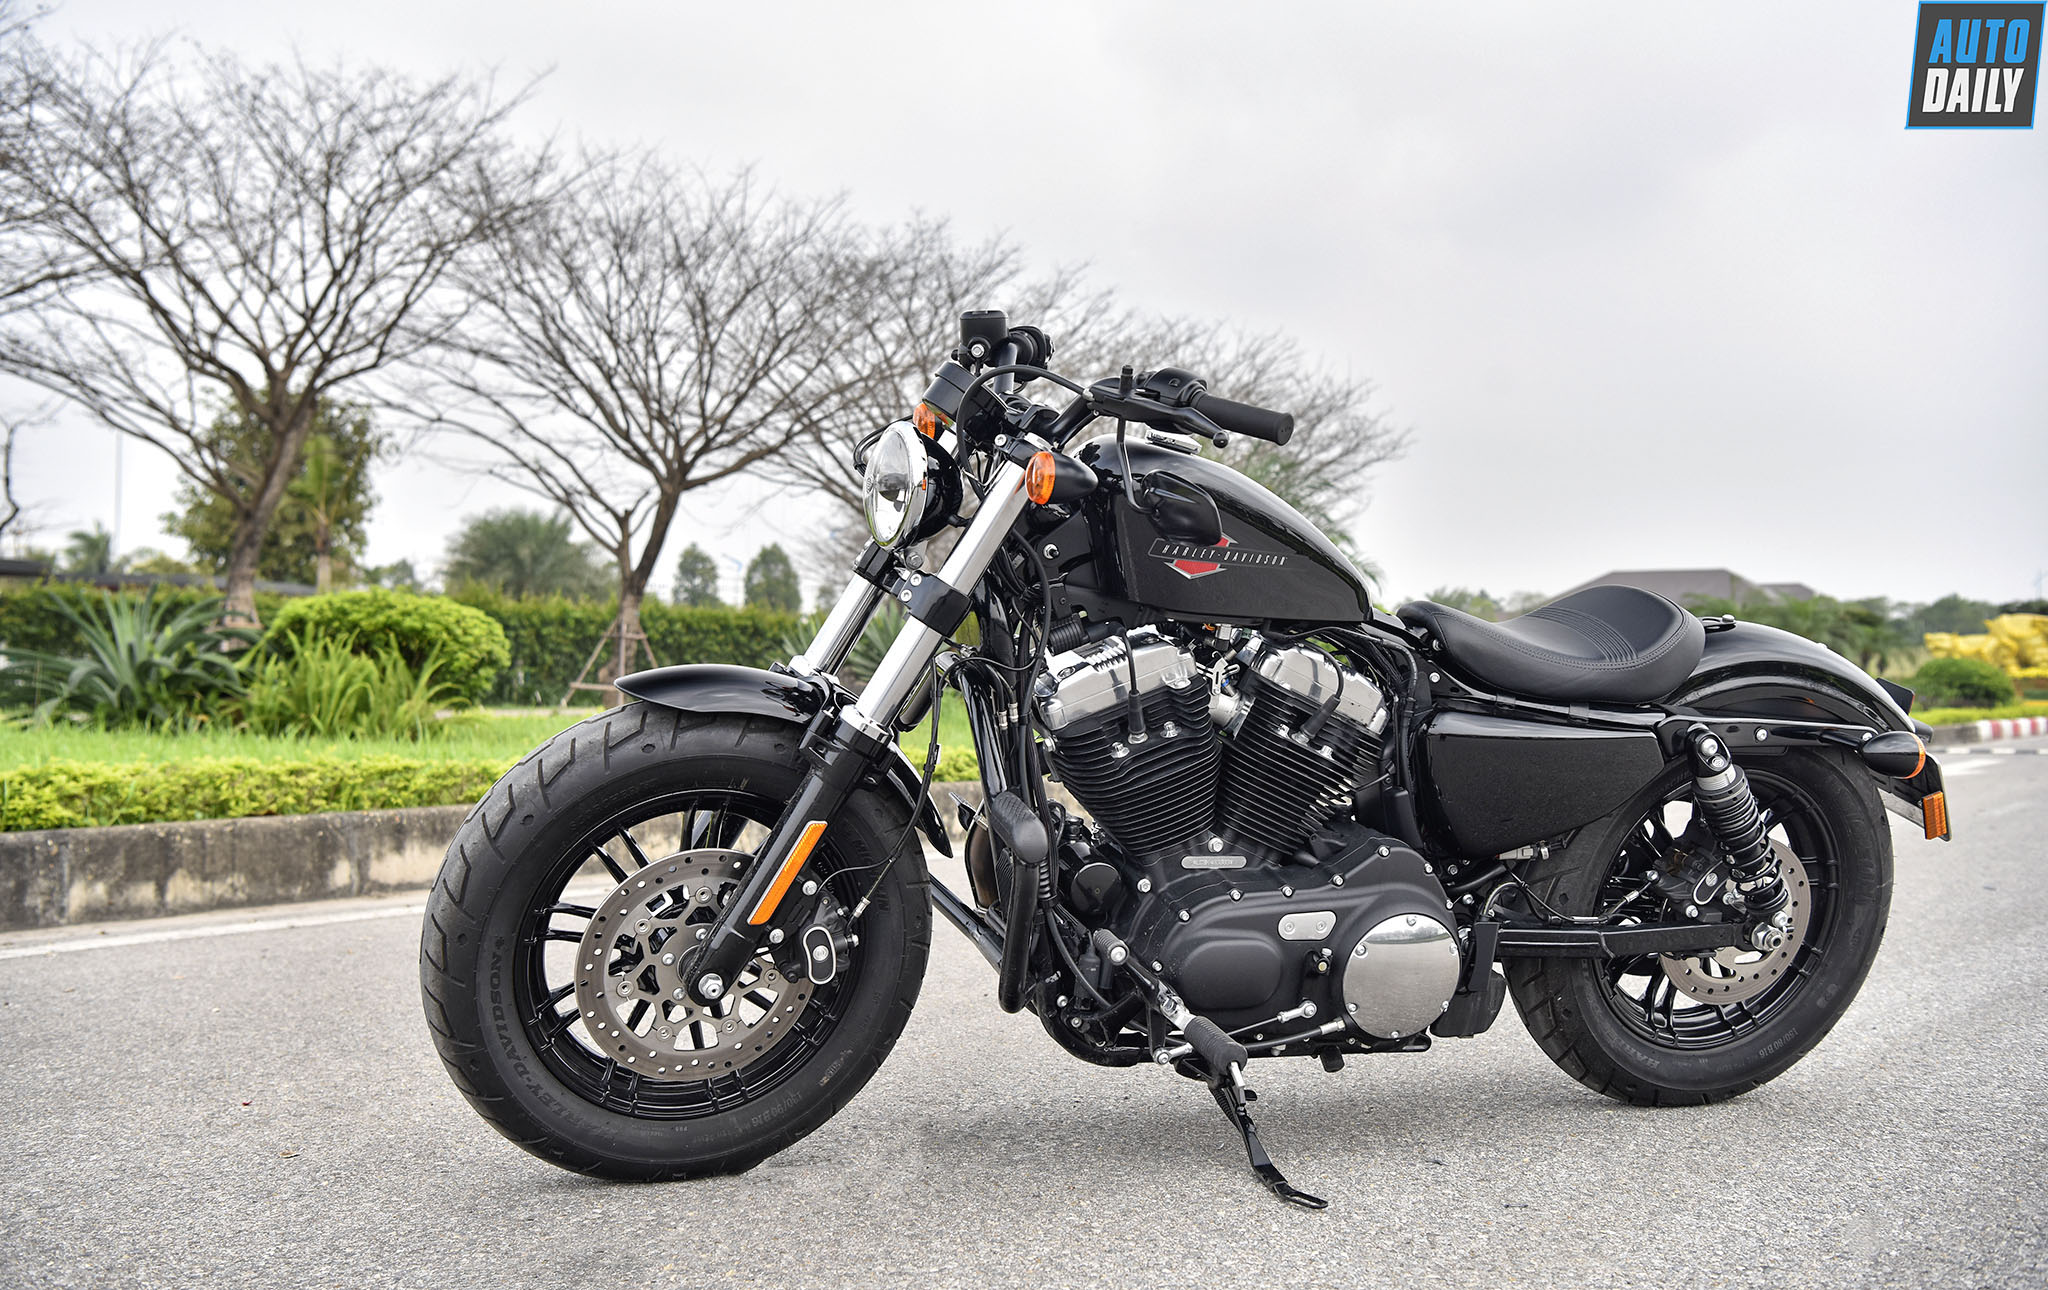 XEHAYVN Chi tiết Harley Davidson Iron 883 giá 380 triệu đồng  YouTube